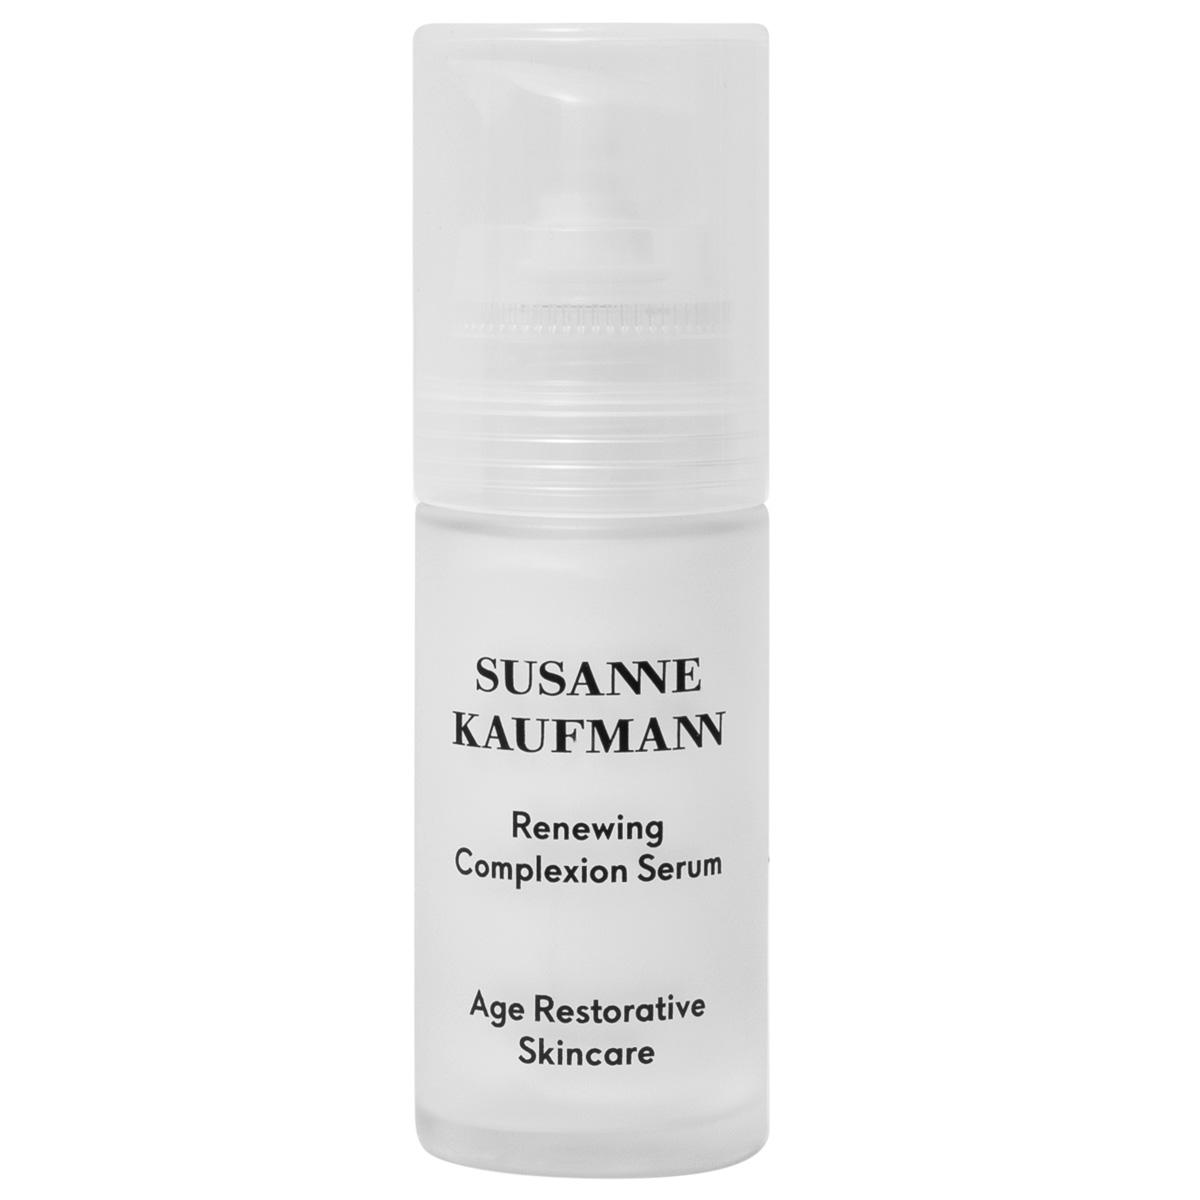 Susanne Kaufmann Age Restorative Skincare Sérum régénérant - Renewing Complexion Serum 30 ml - 1